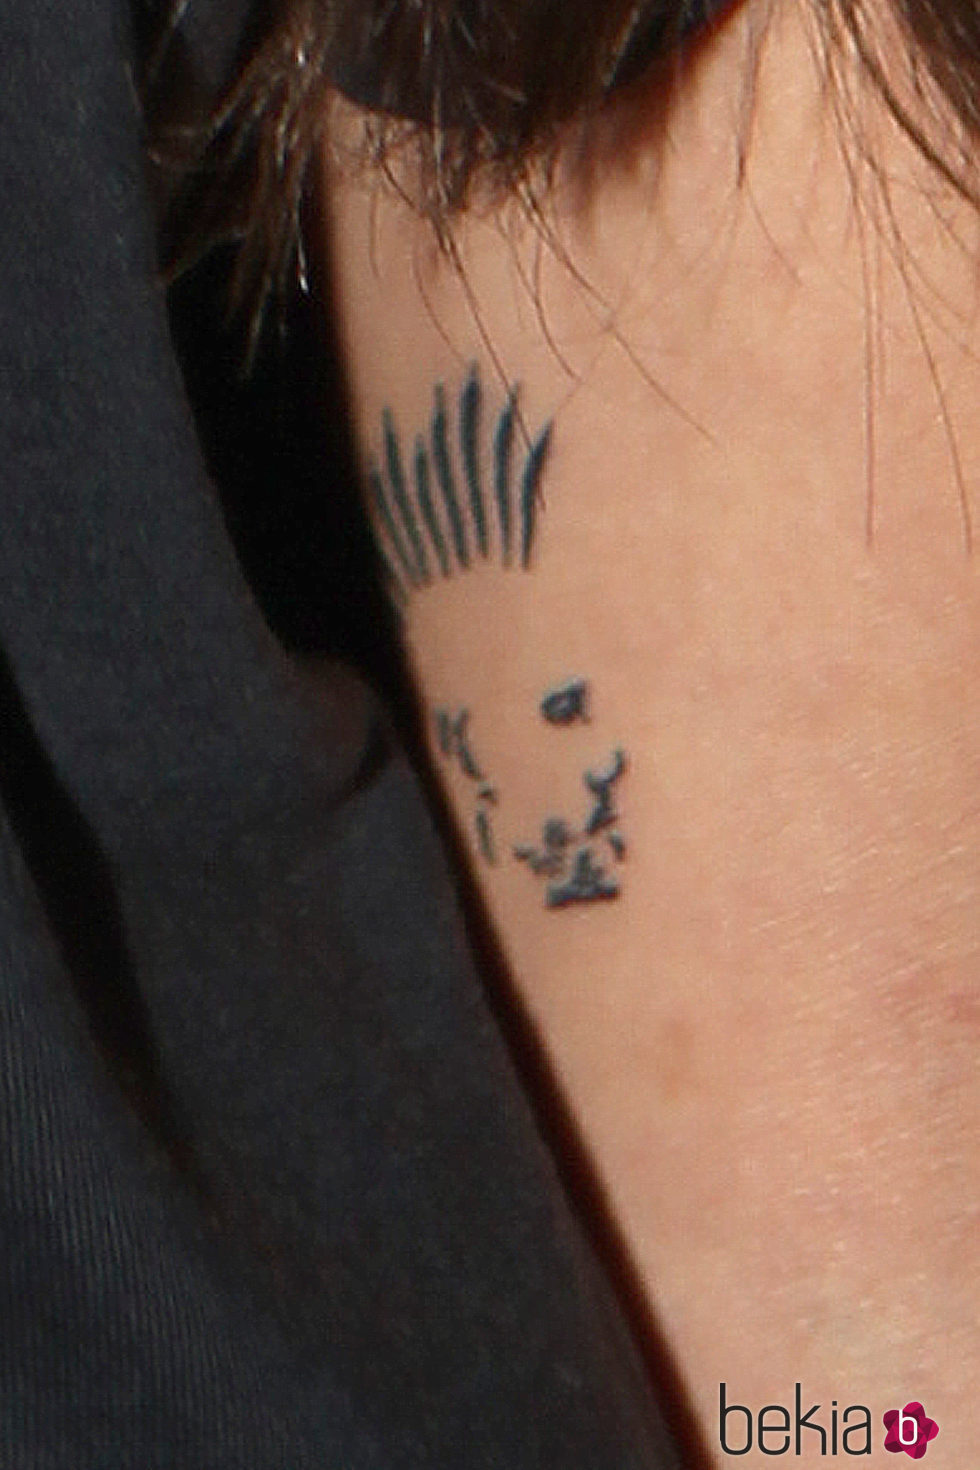 Tatuaje que Cristina Pedroche tiene en el brazo con la cara de David Muñoz